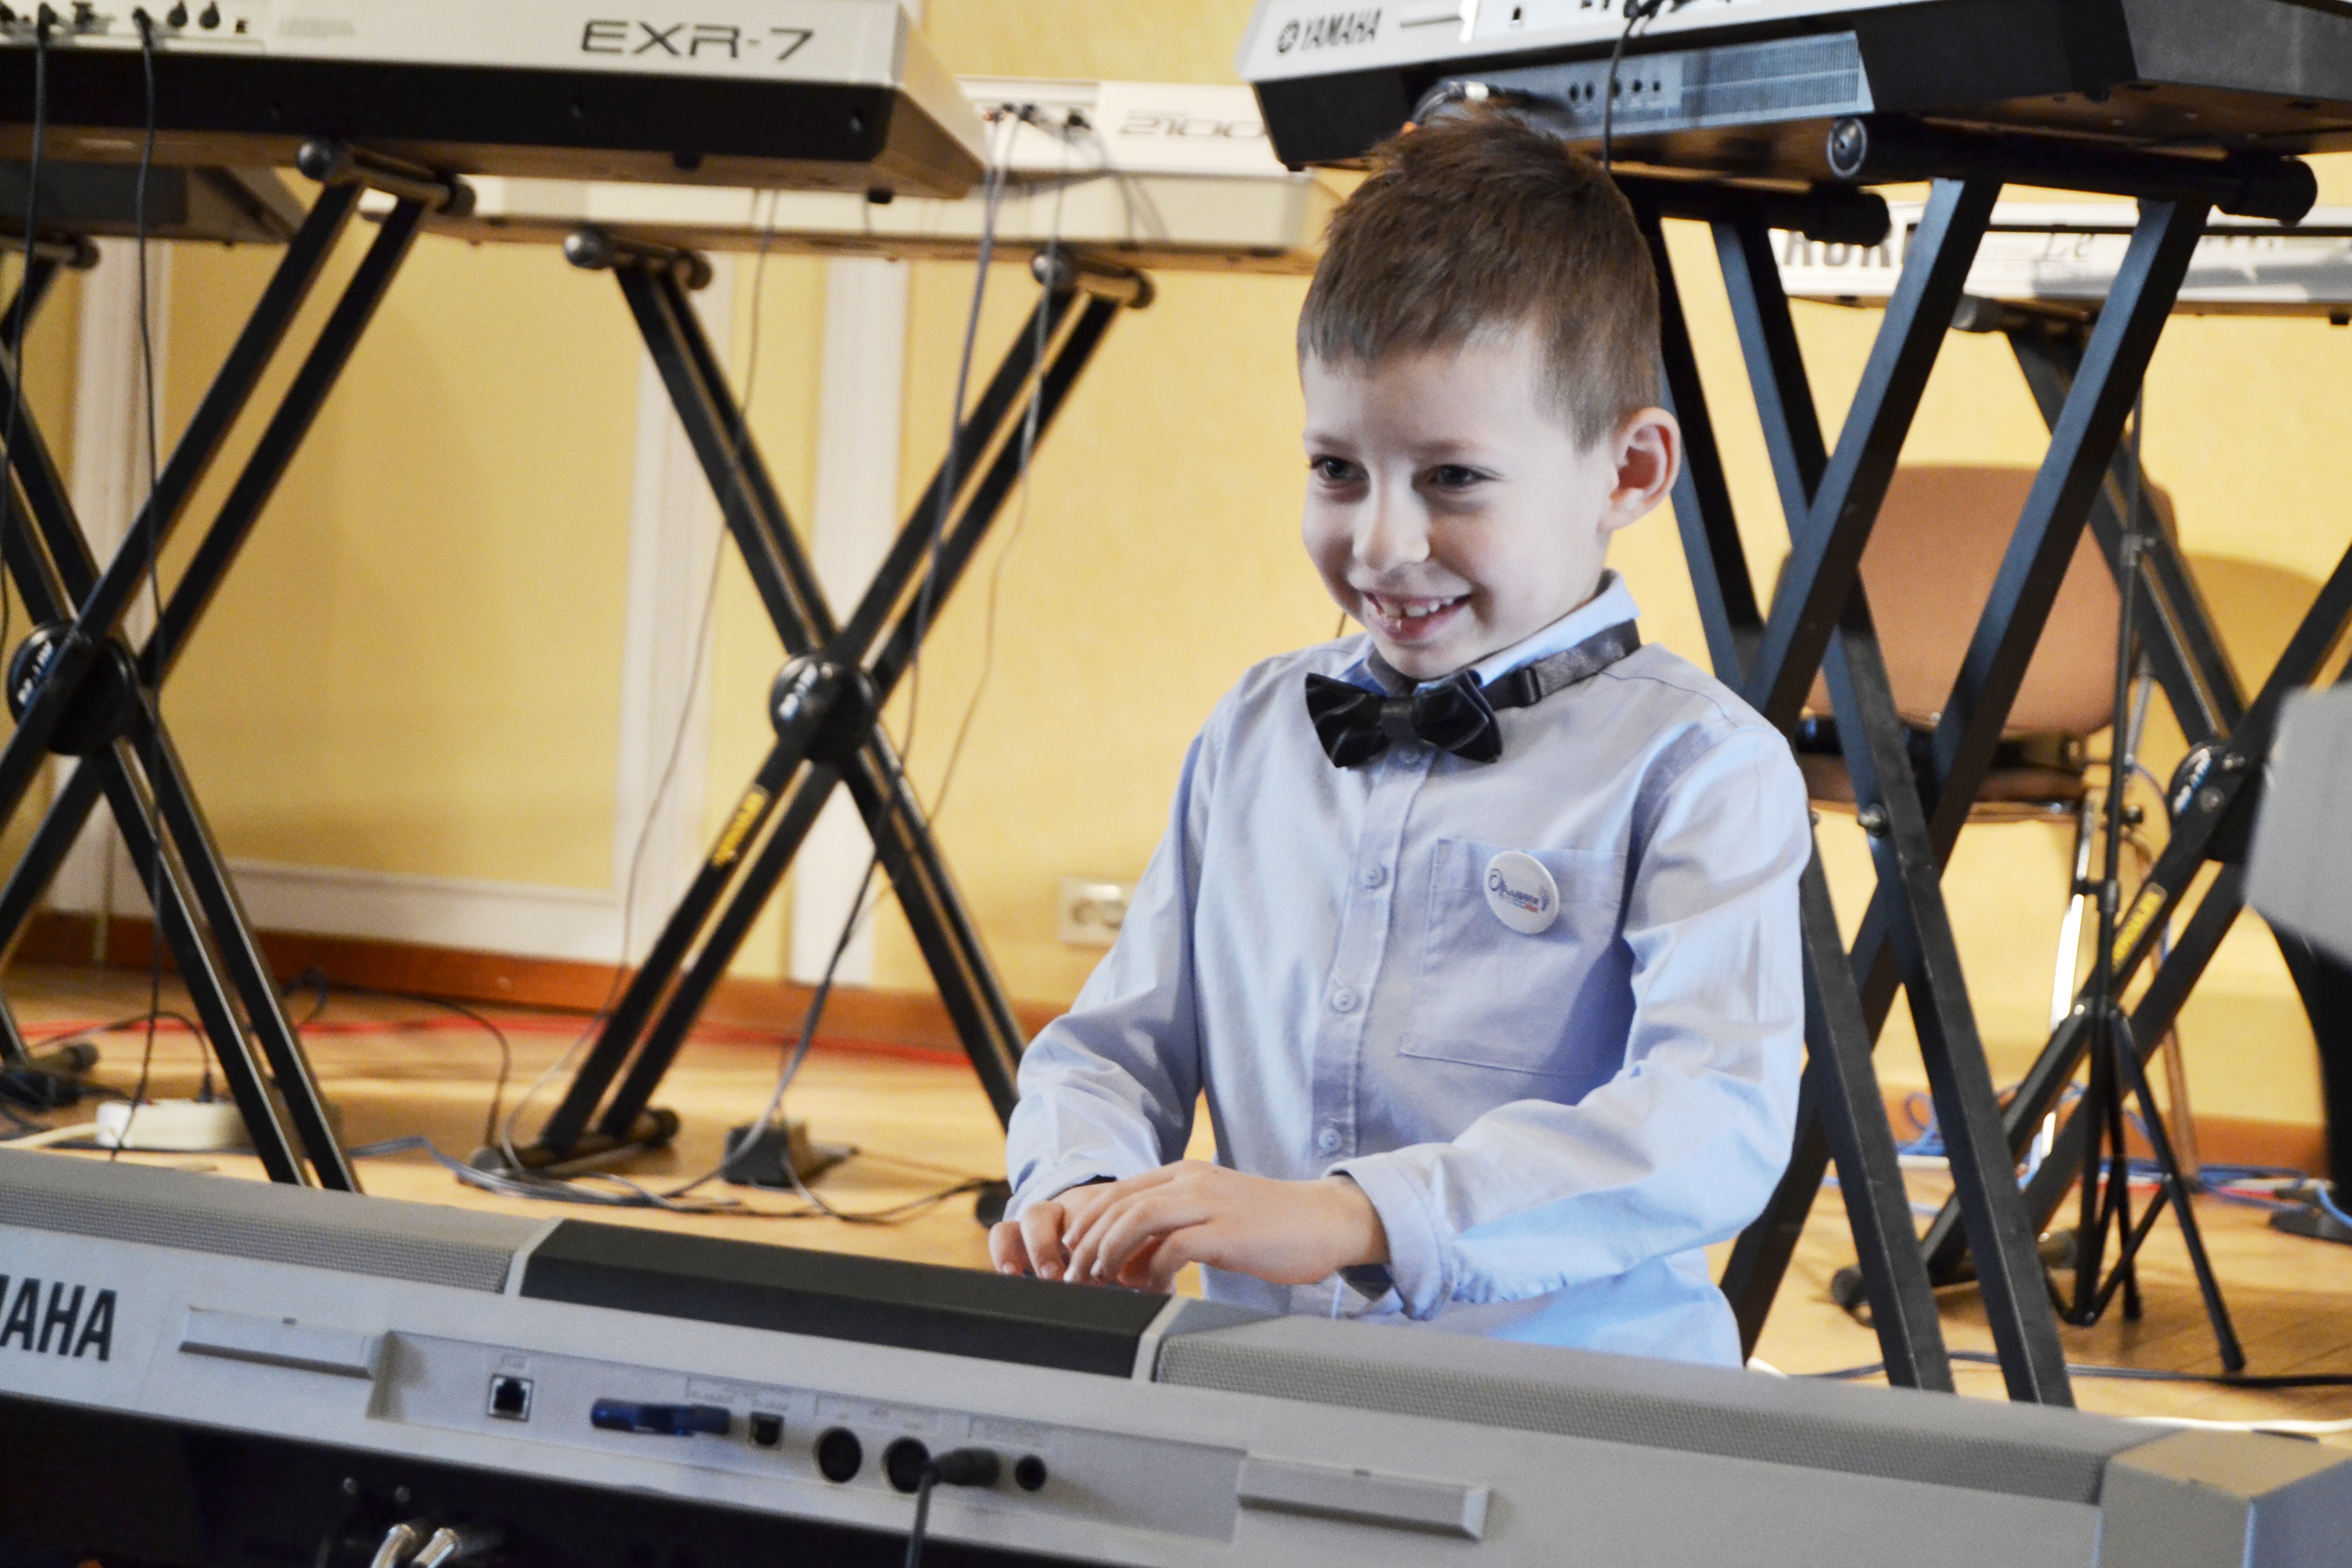 Юные музыканты Иванова и Ярославля выступили на совместном концерте электронно-клавишной музыки.